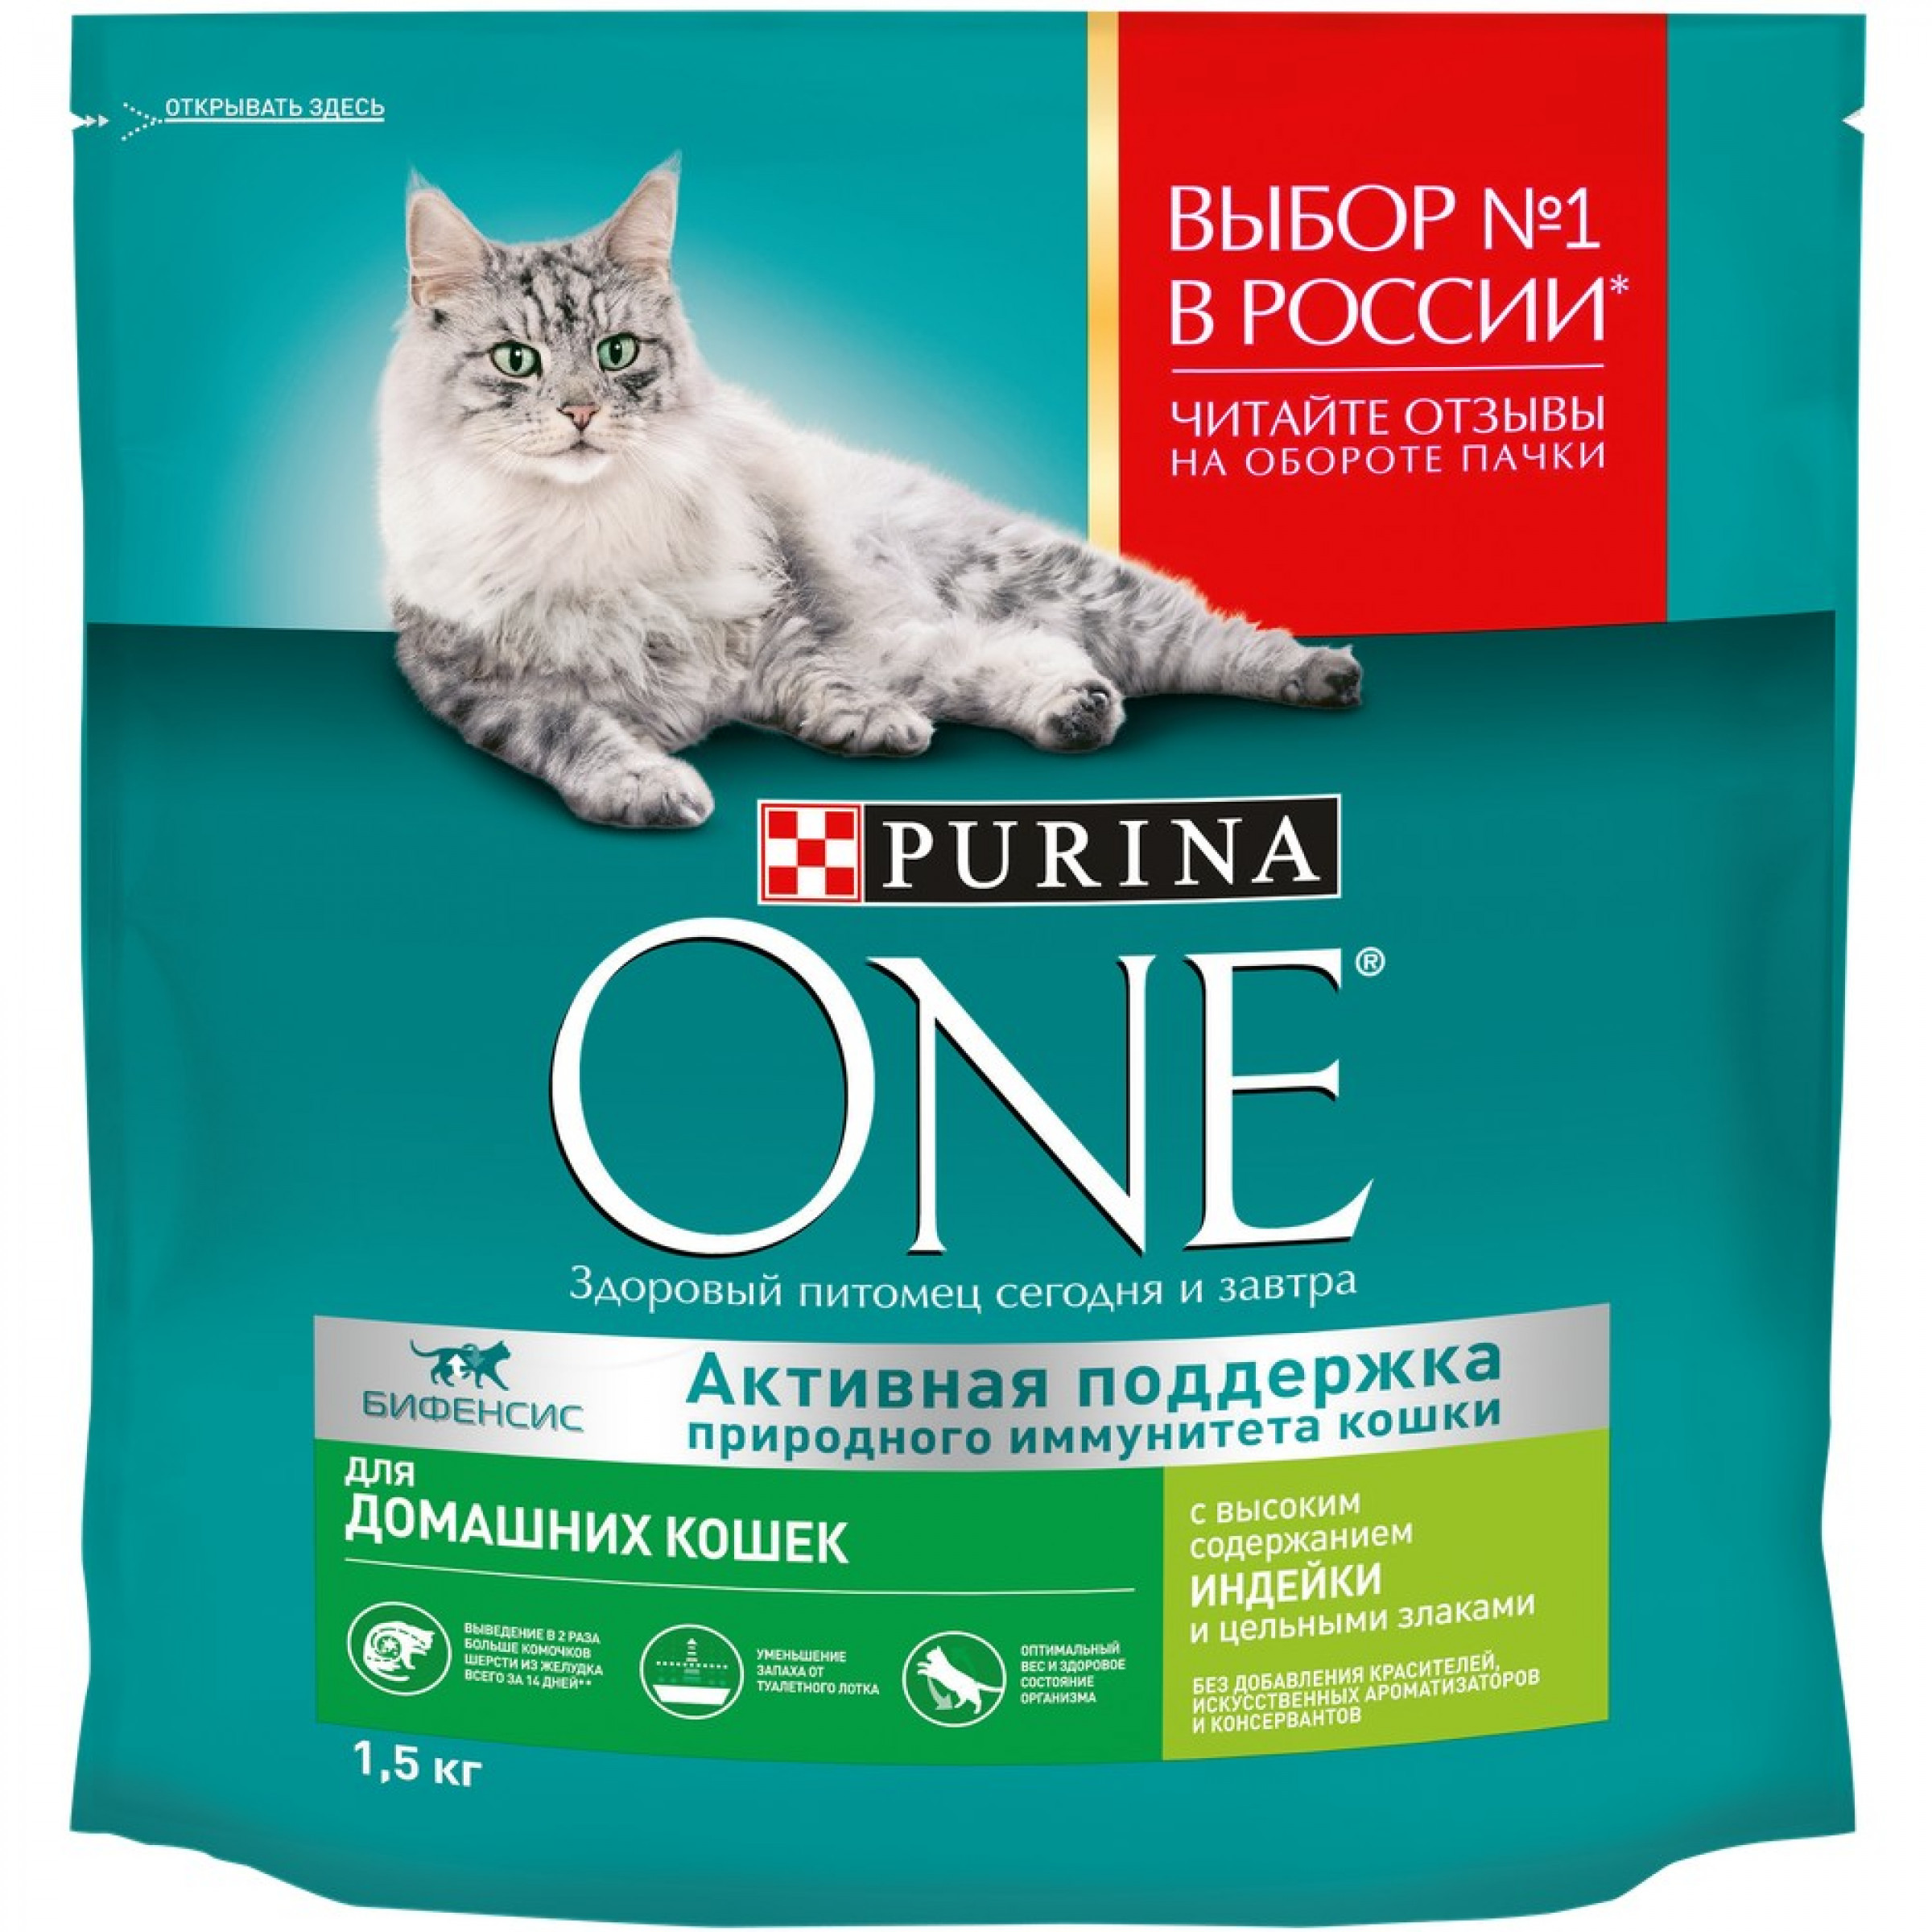 Сухой корм Purina One для домашних кошек с индейкой, 1.5 кг